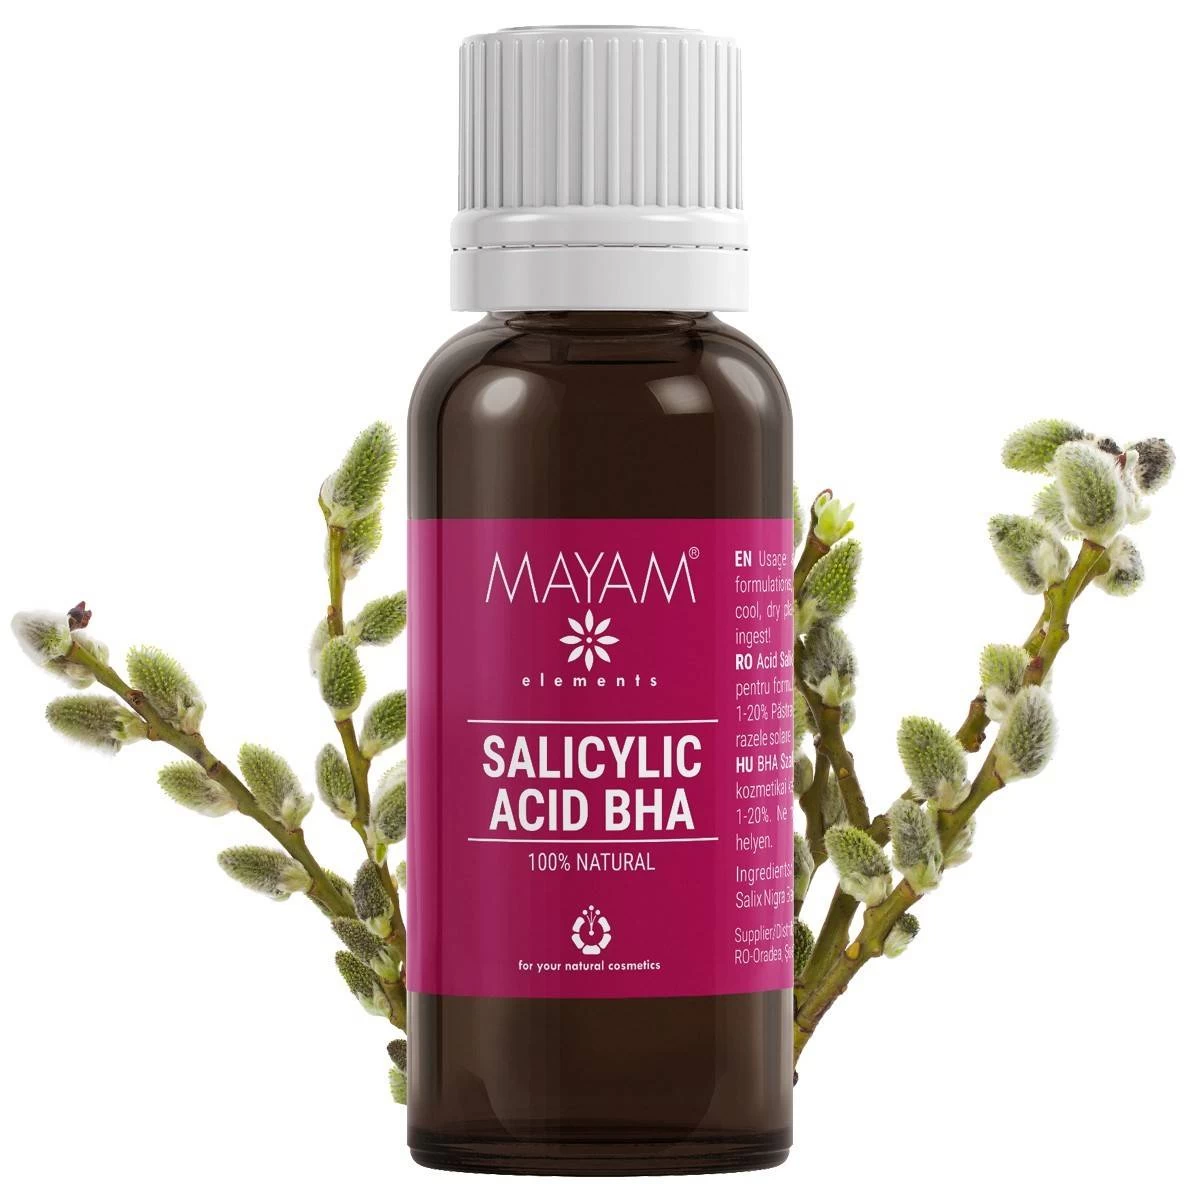 Acid salicilic bha natural, 265g - mayam